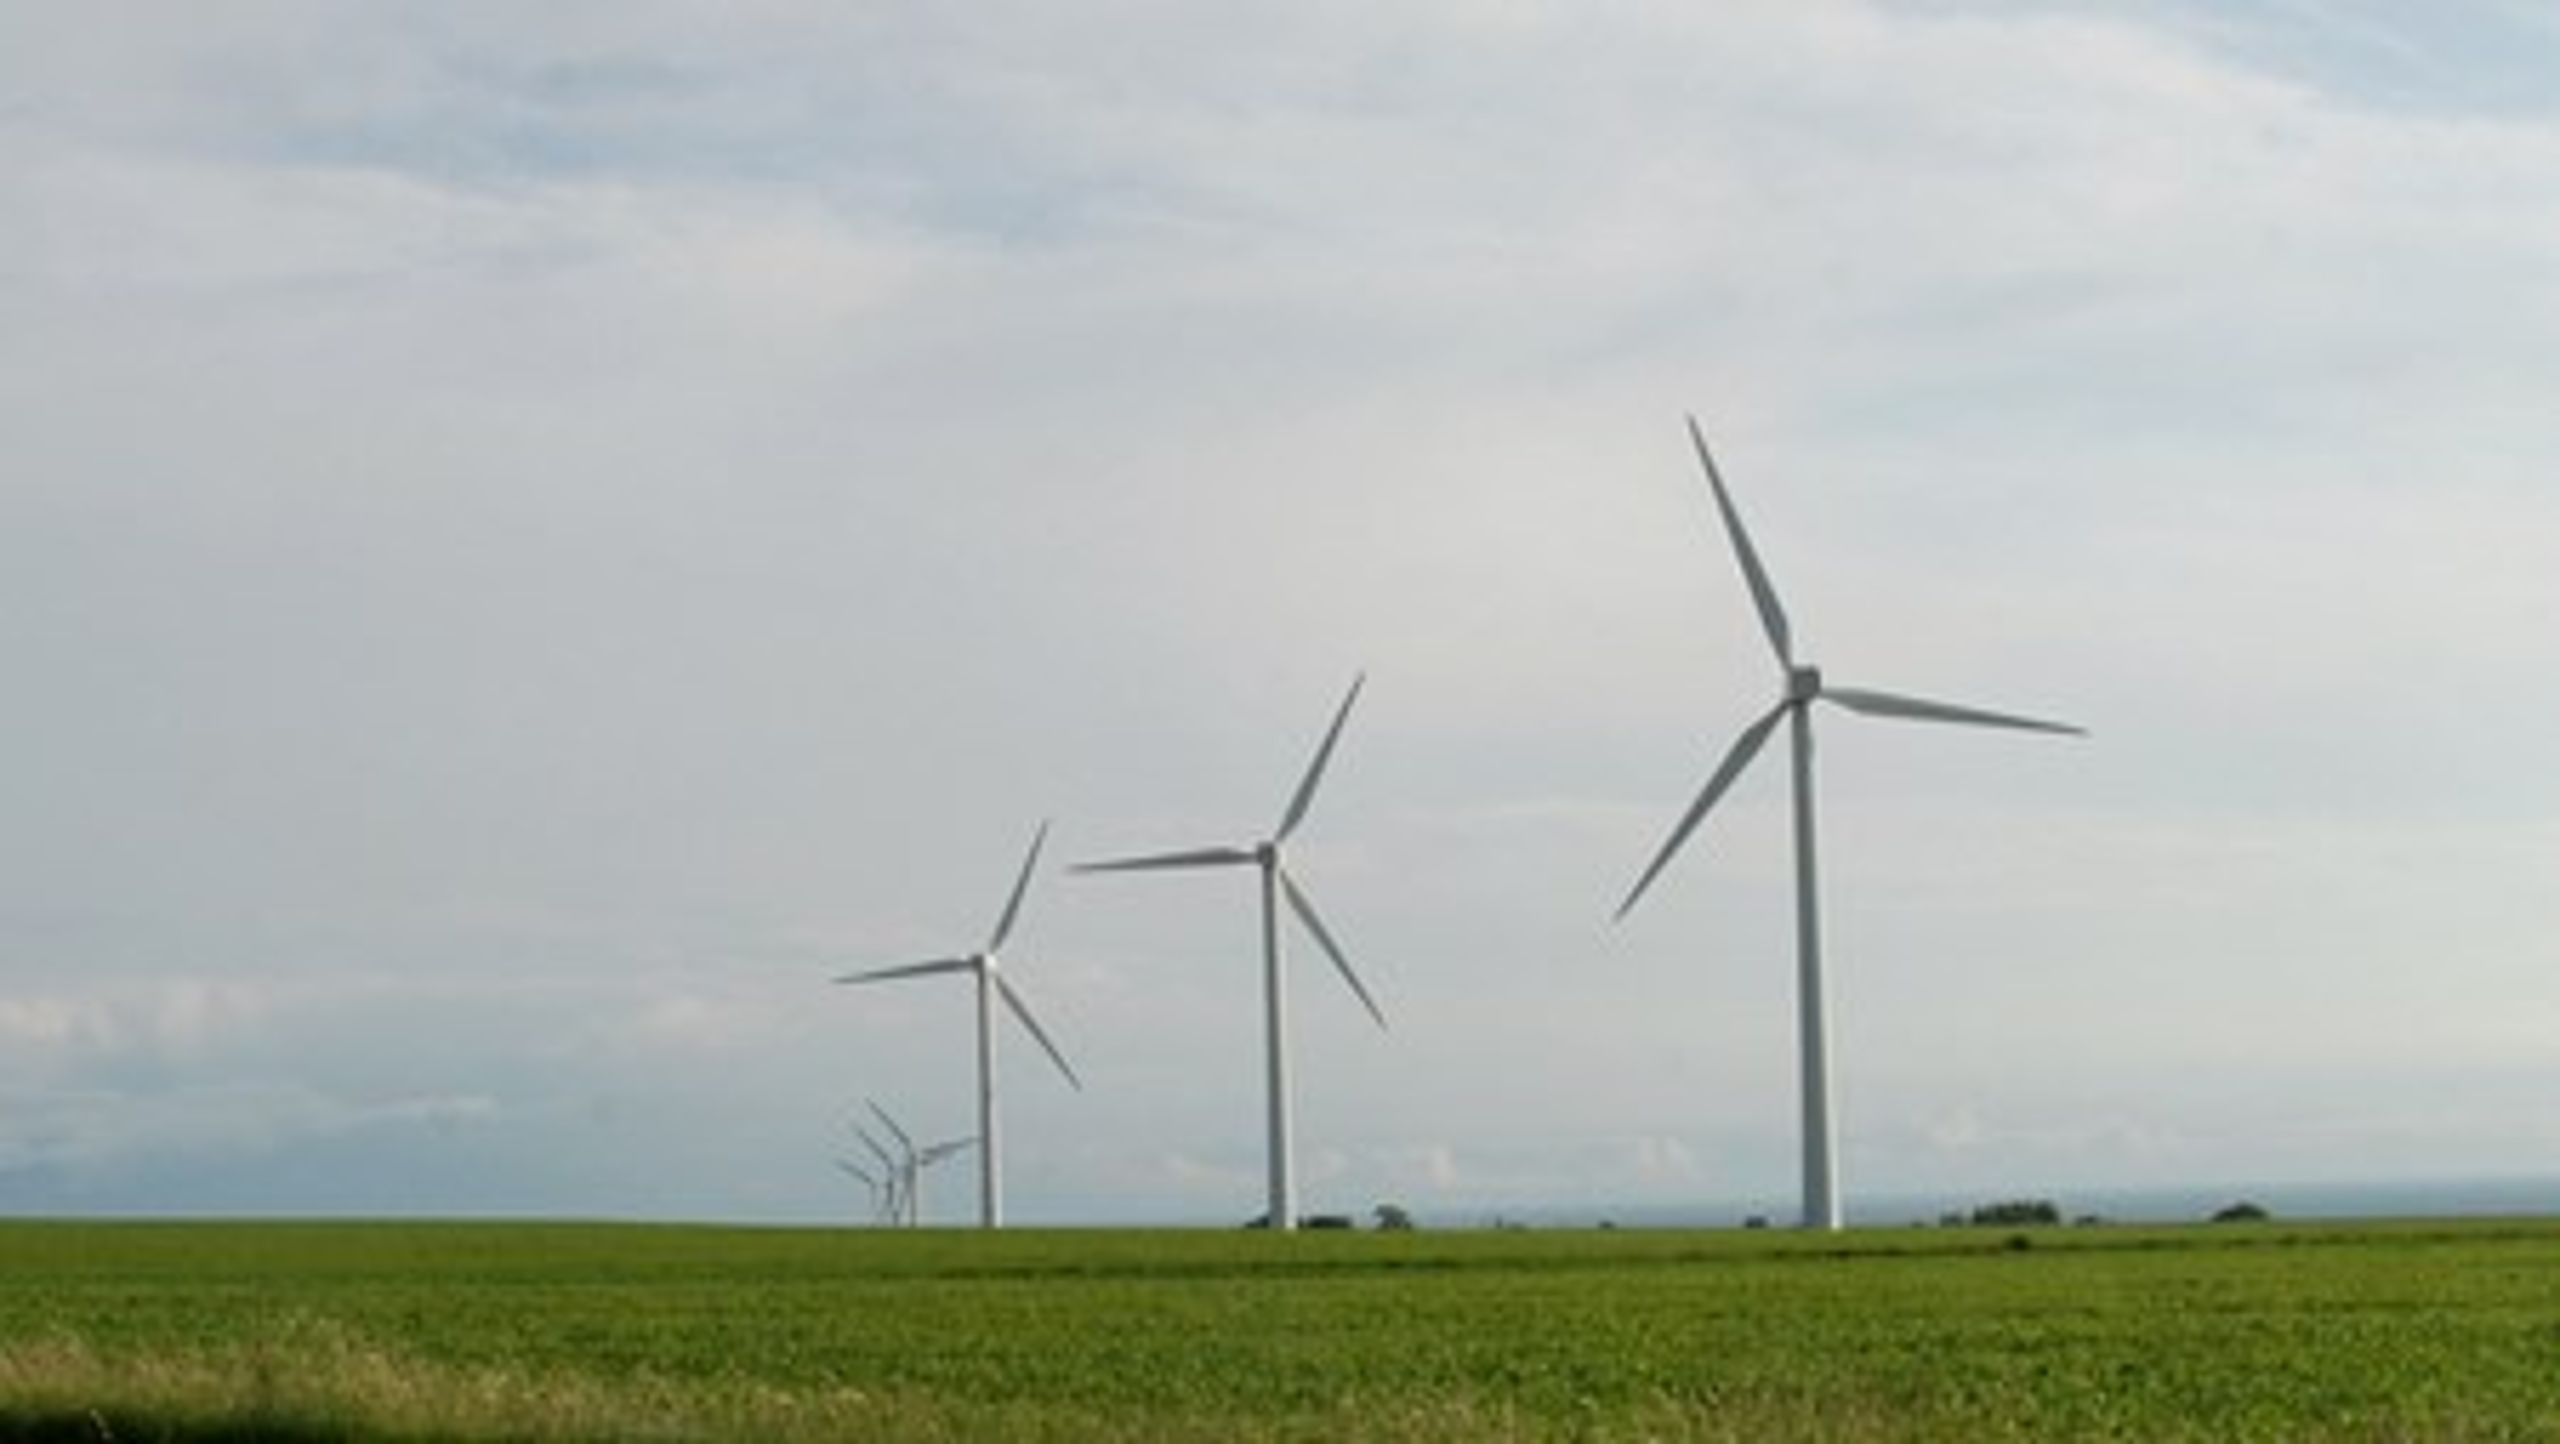 Frederikshavns kommunes plan om at være forsynet af 100 procent vedvarende energi i 2030 vurderes skrøbelig, da det forudsætter 55 procent af energien skal komme fra vindenergi. Antallet af vindmøller der sættes op er kommunen nemlig ikke selv herre over.